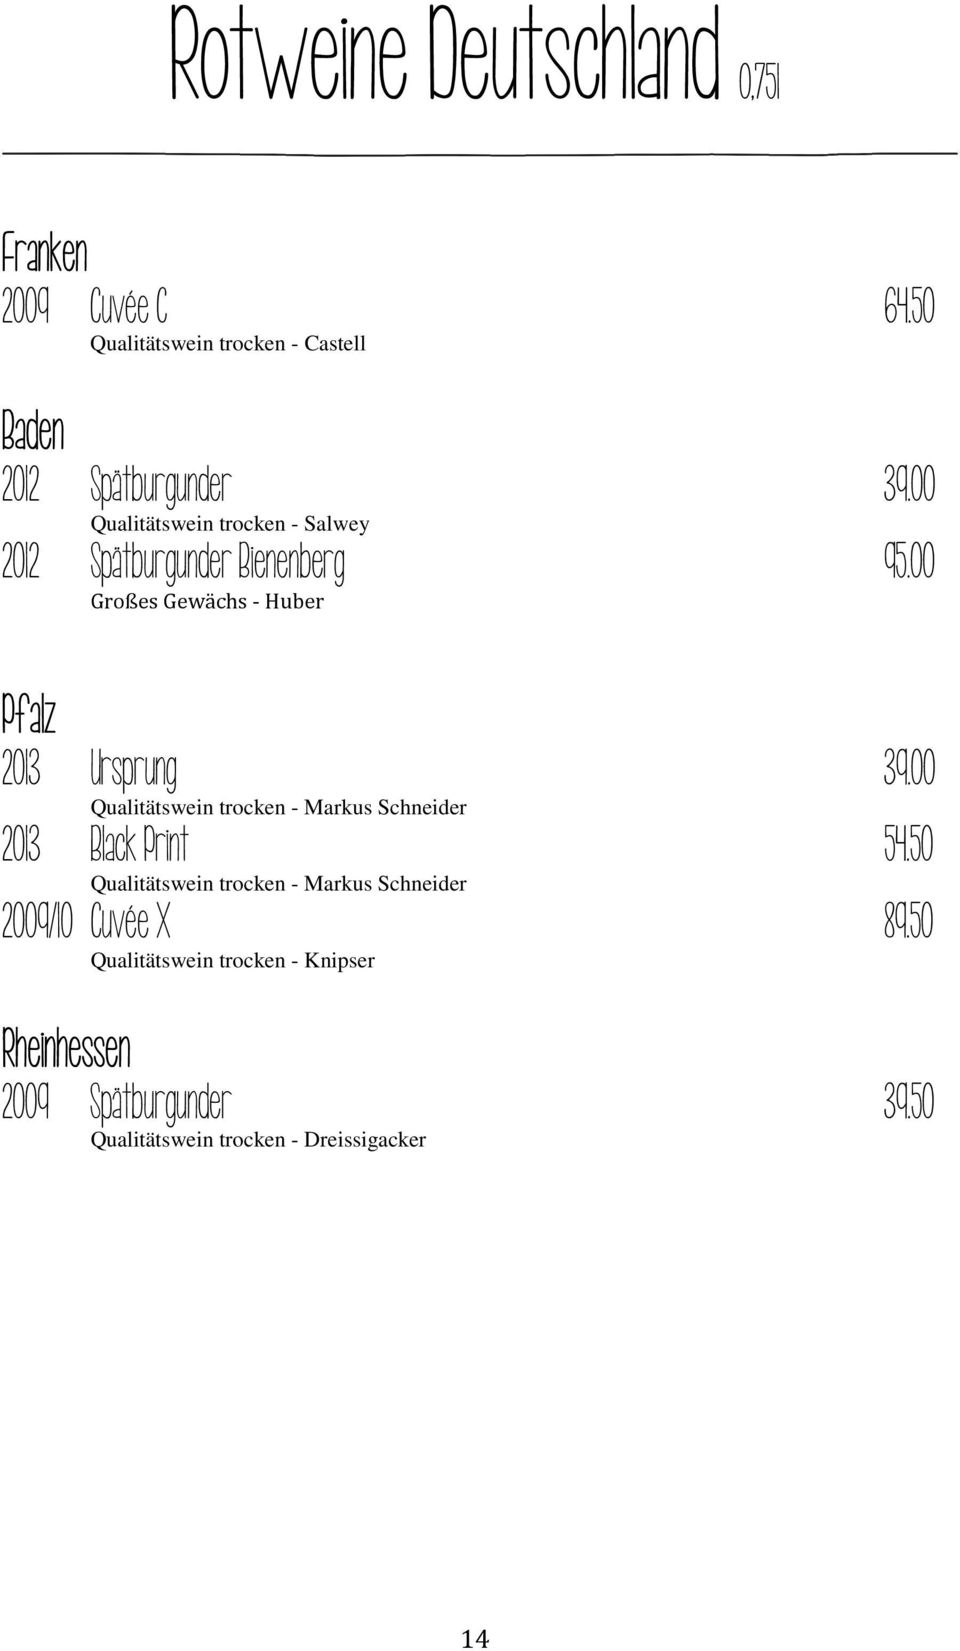 00 Qualitätswein trocken - Markus Schneider 2013 Black Print 54.